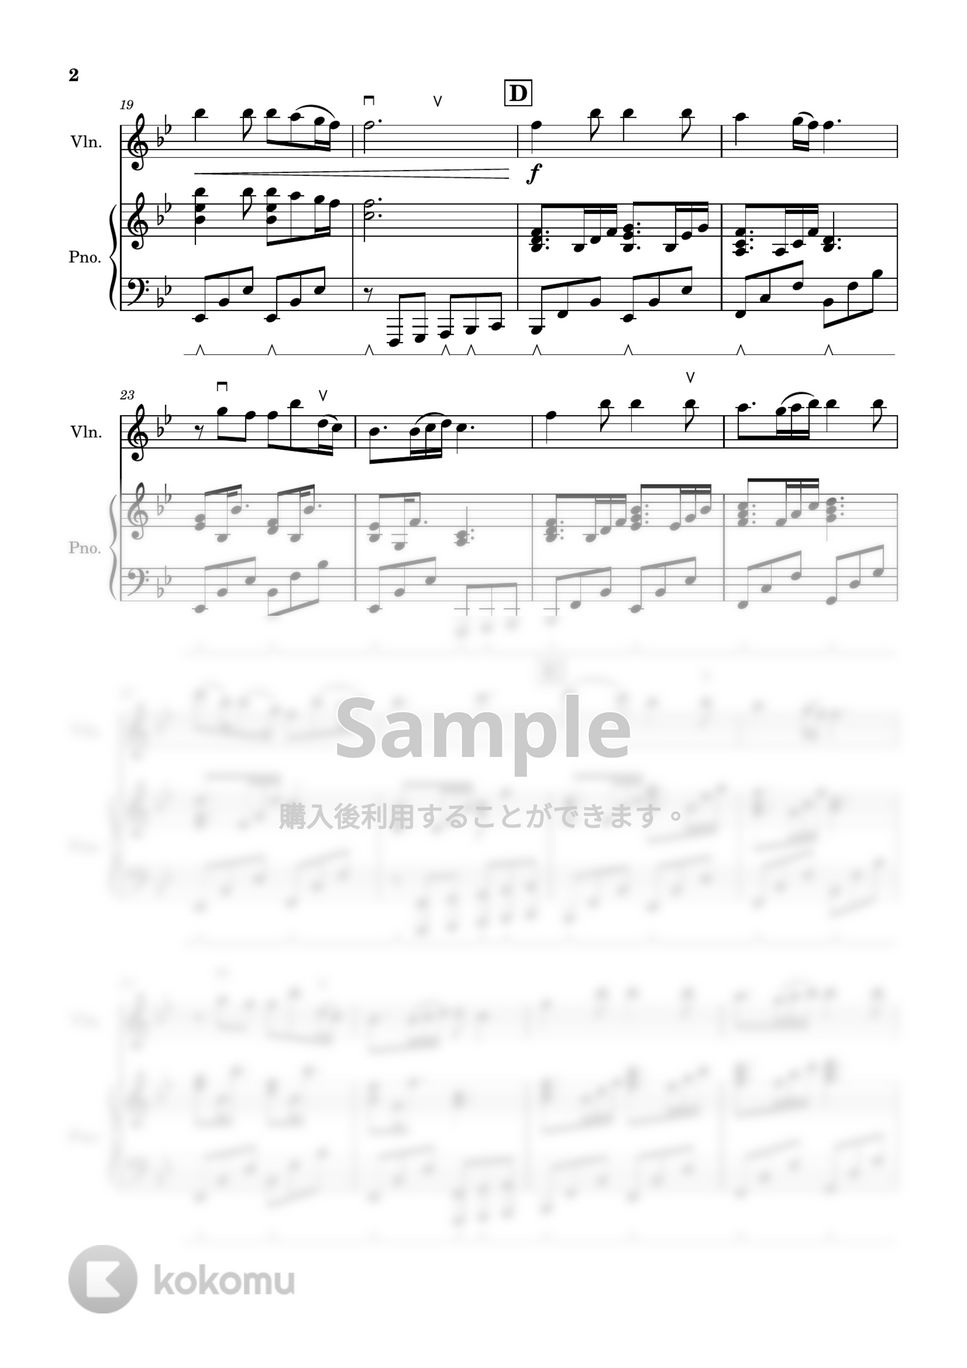 あいみょん - 愛の花 (バイオリン&ピアノ　約1分半Short ver.) by Kaide